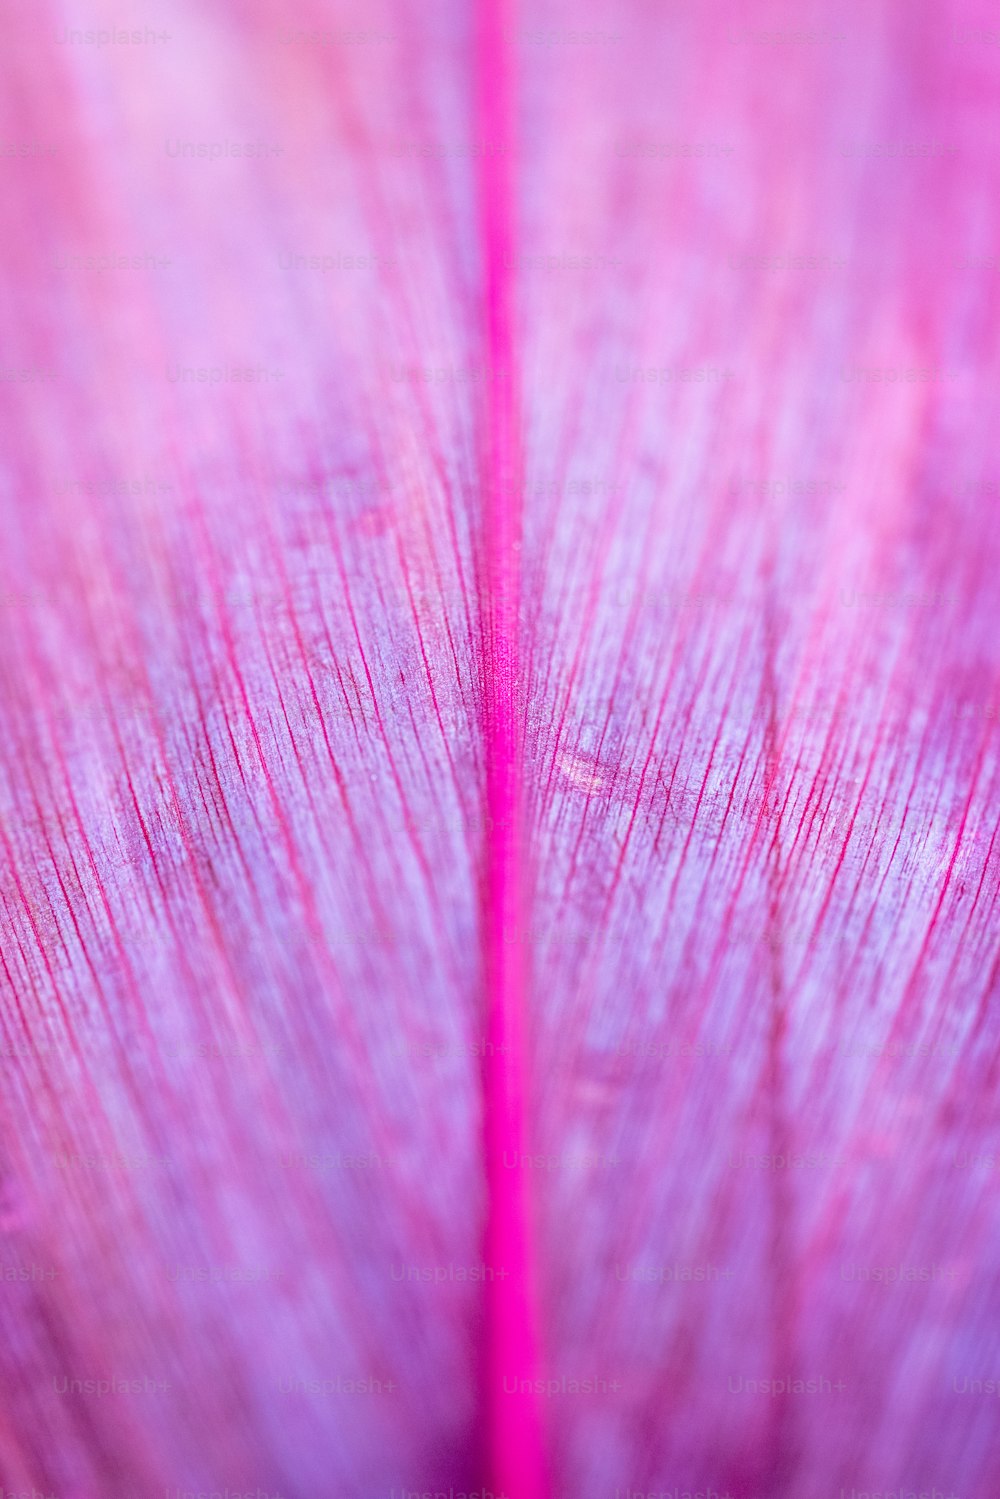 Eine Nahaufnahme eines rosa Blattes